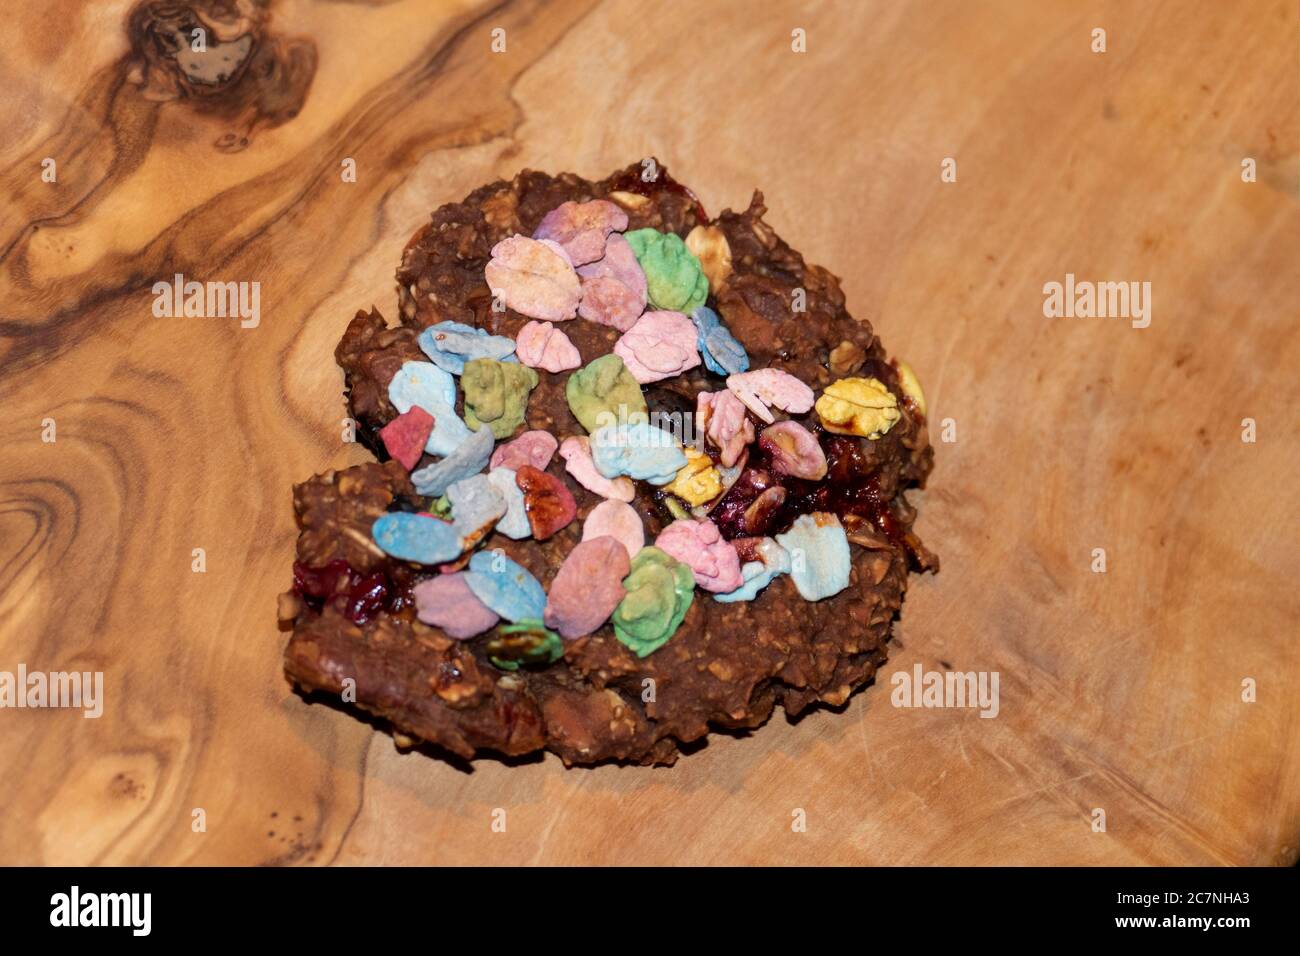 Haferflocken Brownie Kekse, mit Früchten und bunten Flakes Stock Photo